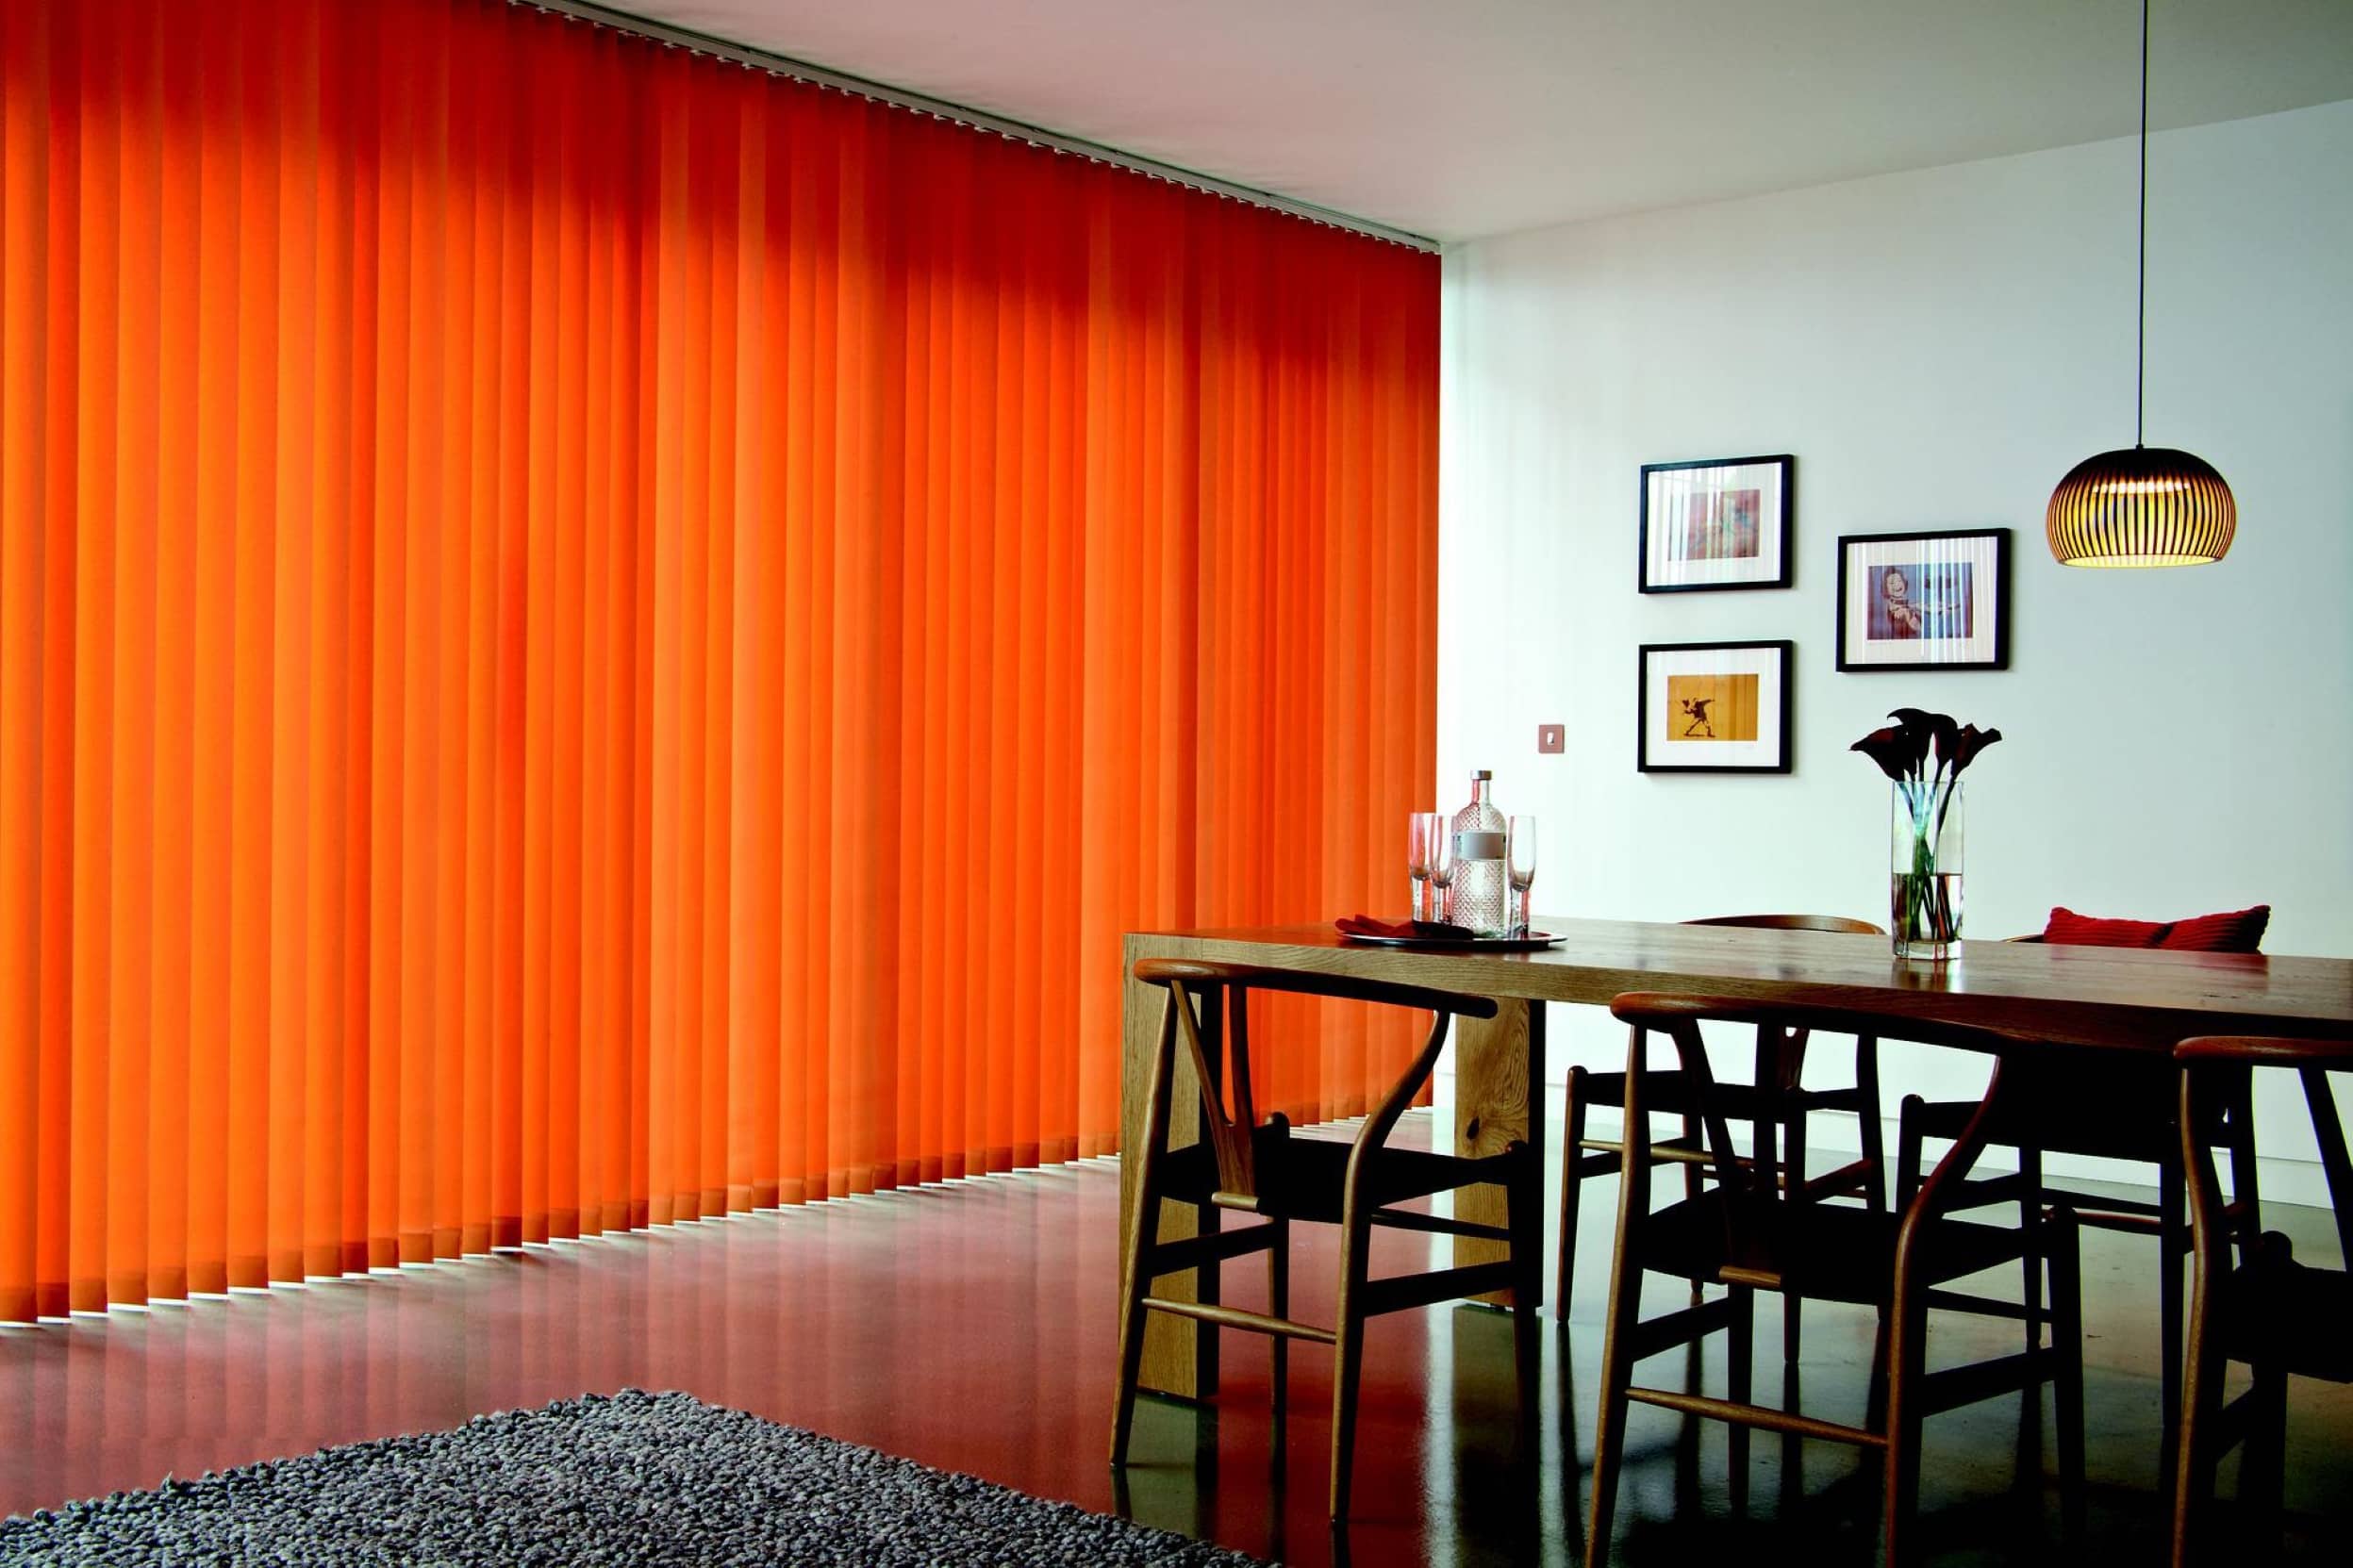 Cortina vertical en color naranja